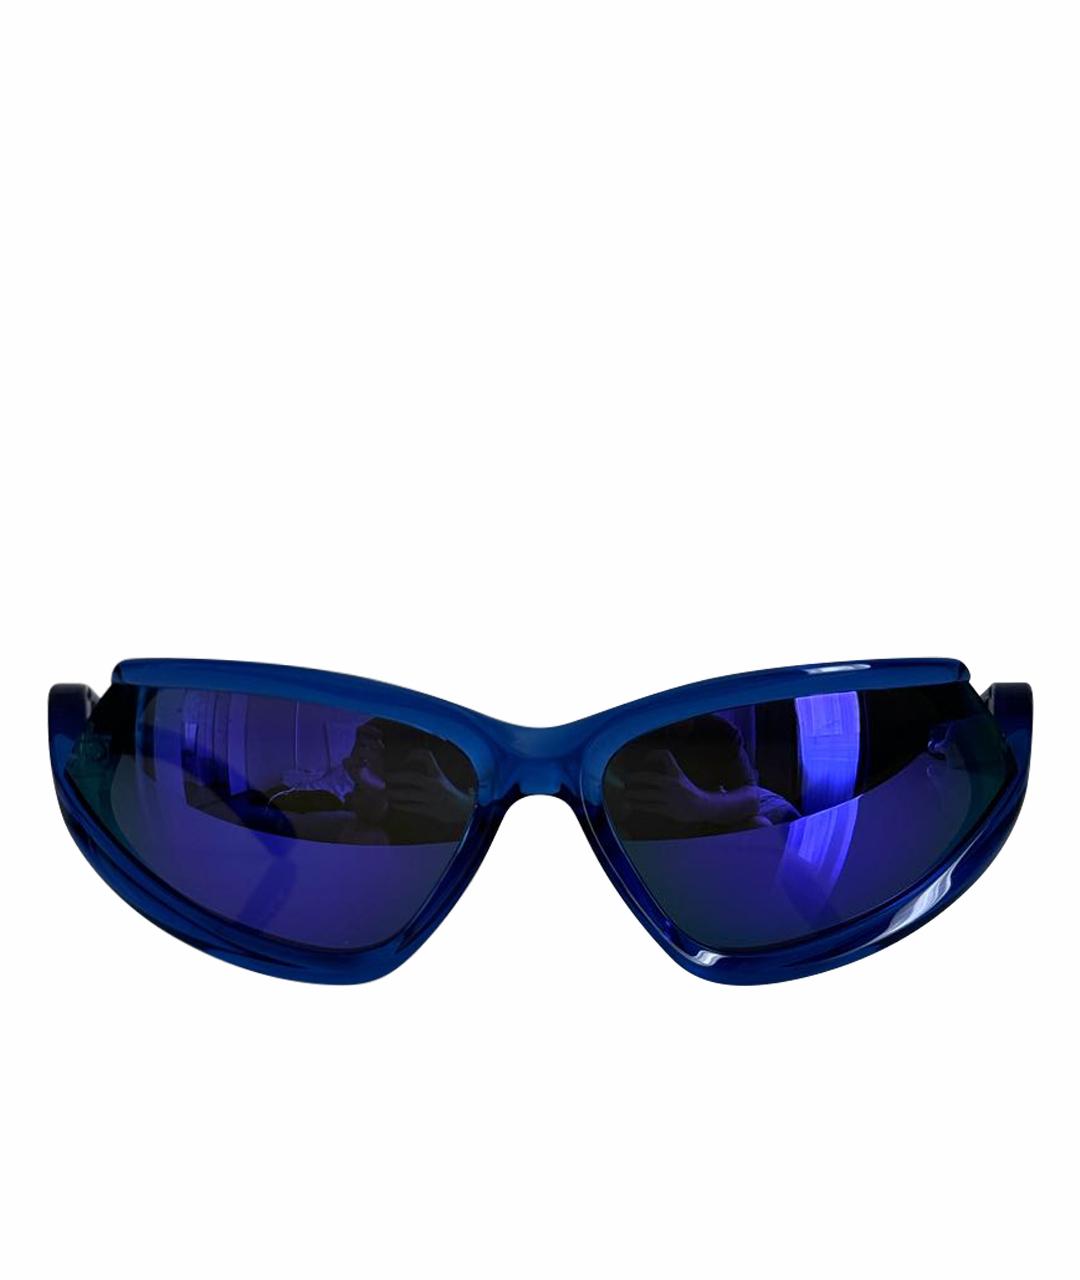 BALENCIAGA Синие пластиковые солнцезащитные очки, фото 1